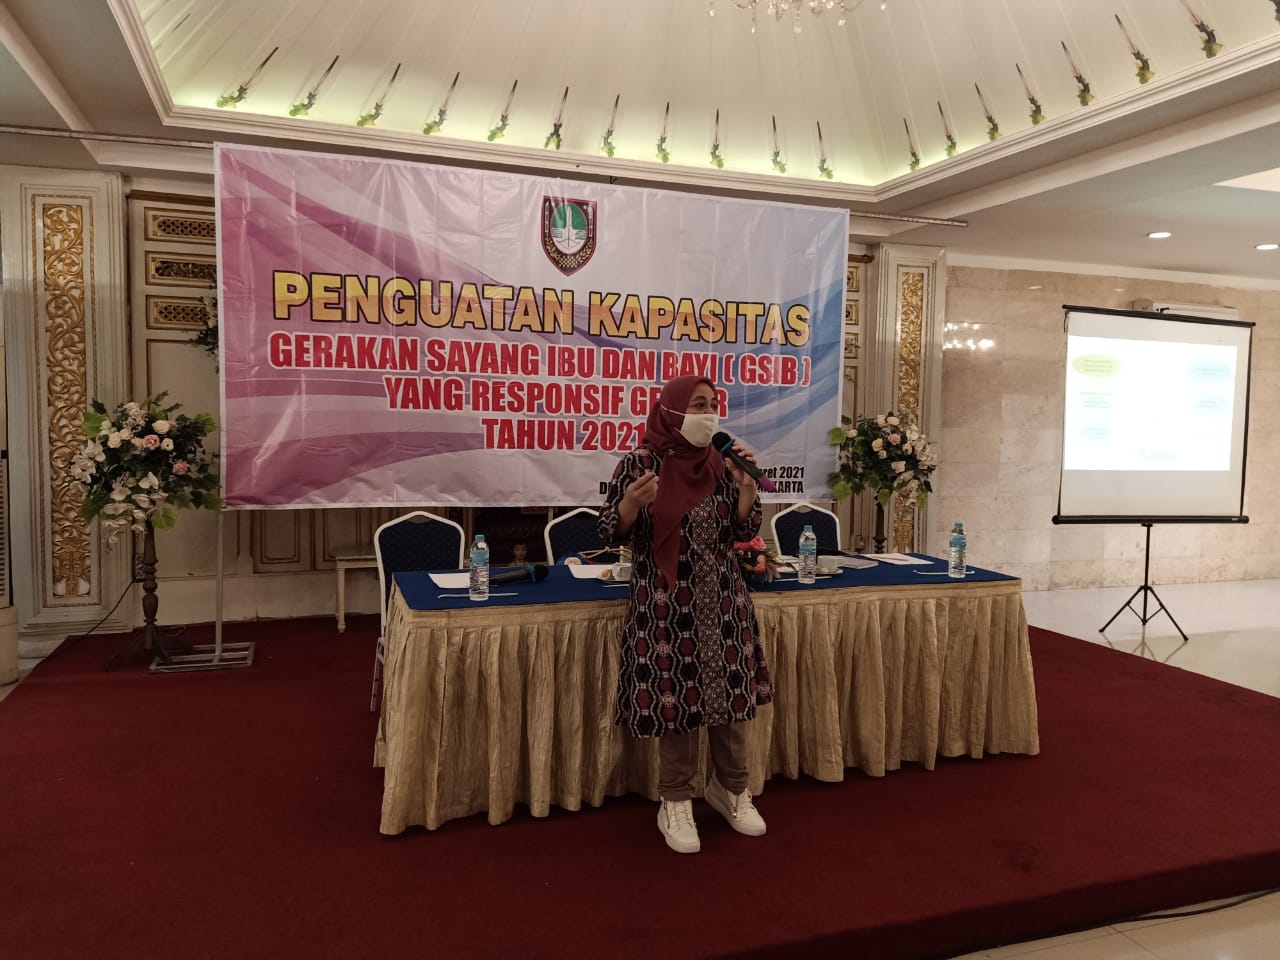 Peer Group PPKG (Dr. Rina Herlina Haryanti, S.Sos., M.Si) menjadi Narasumber dalam Kegiatan Penguatan Kapasitas Gerakan Sayang Ibu dan Bayi yang Responsif Gender dengan Mengusung Tema Peran GSIB di Era Pandemi Covid 19